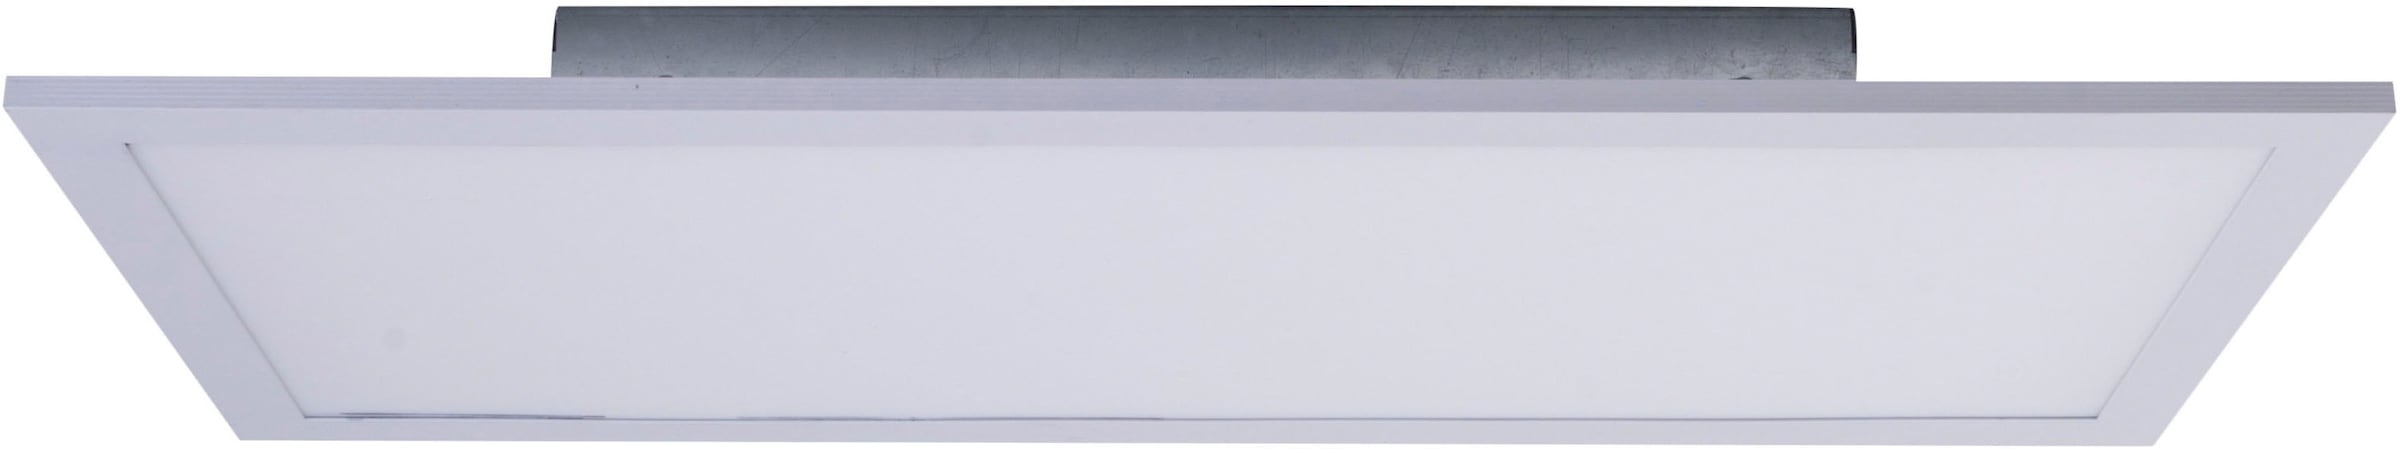 näve LED Panel »Nicola«, 1 flammig-flammig, weiß, Lichtfarbe neutralweiß, Länge 59,5cm, LED, inkl. Treiber